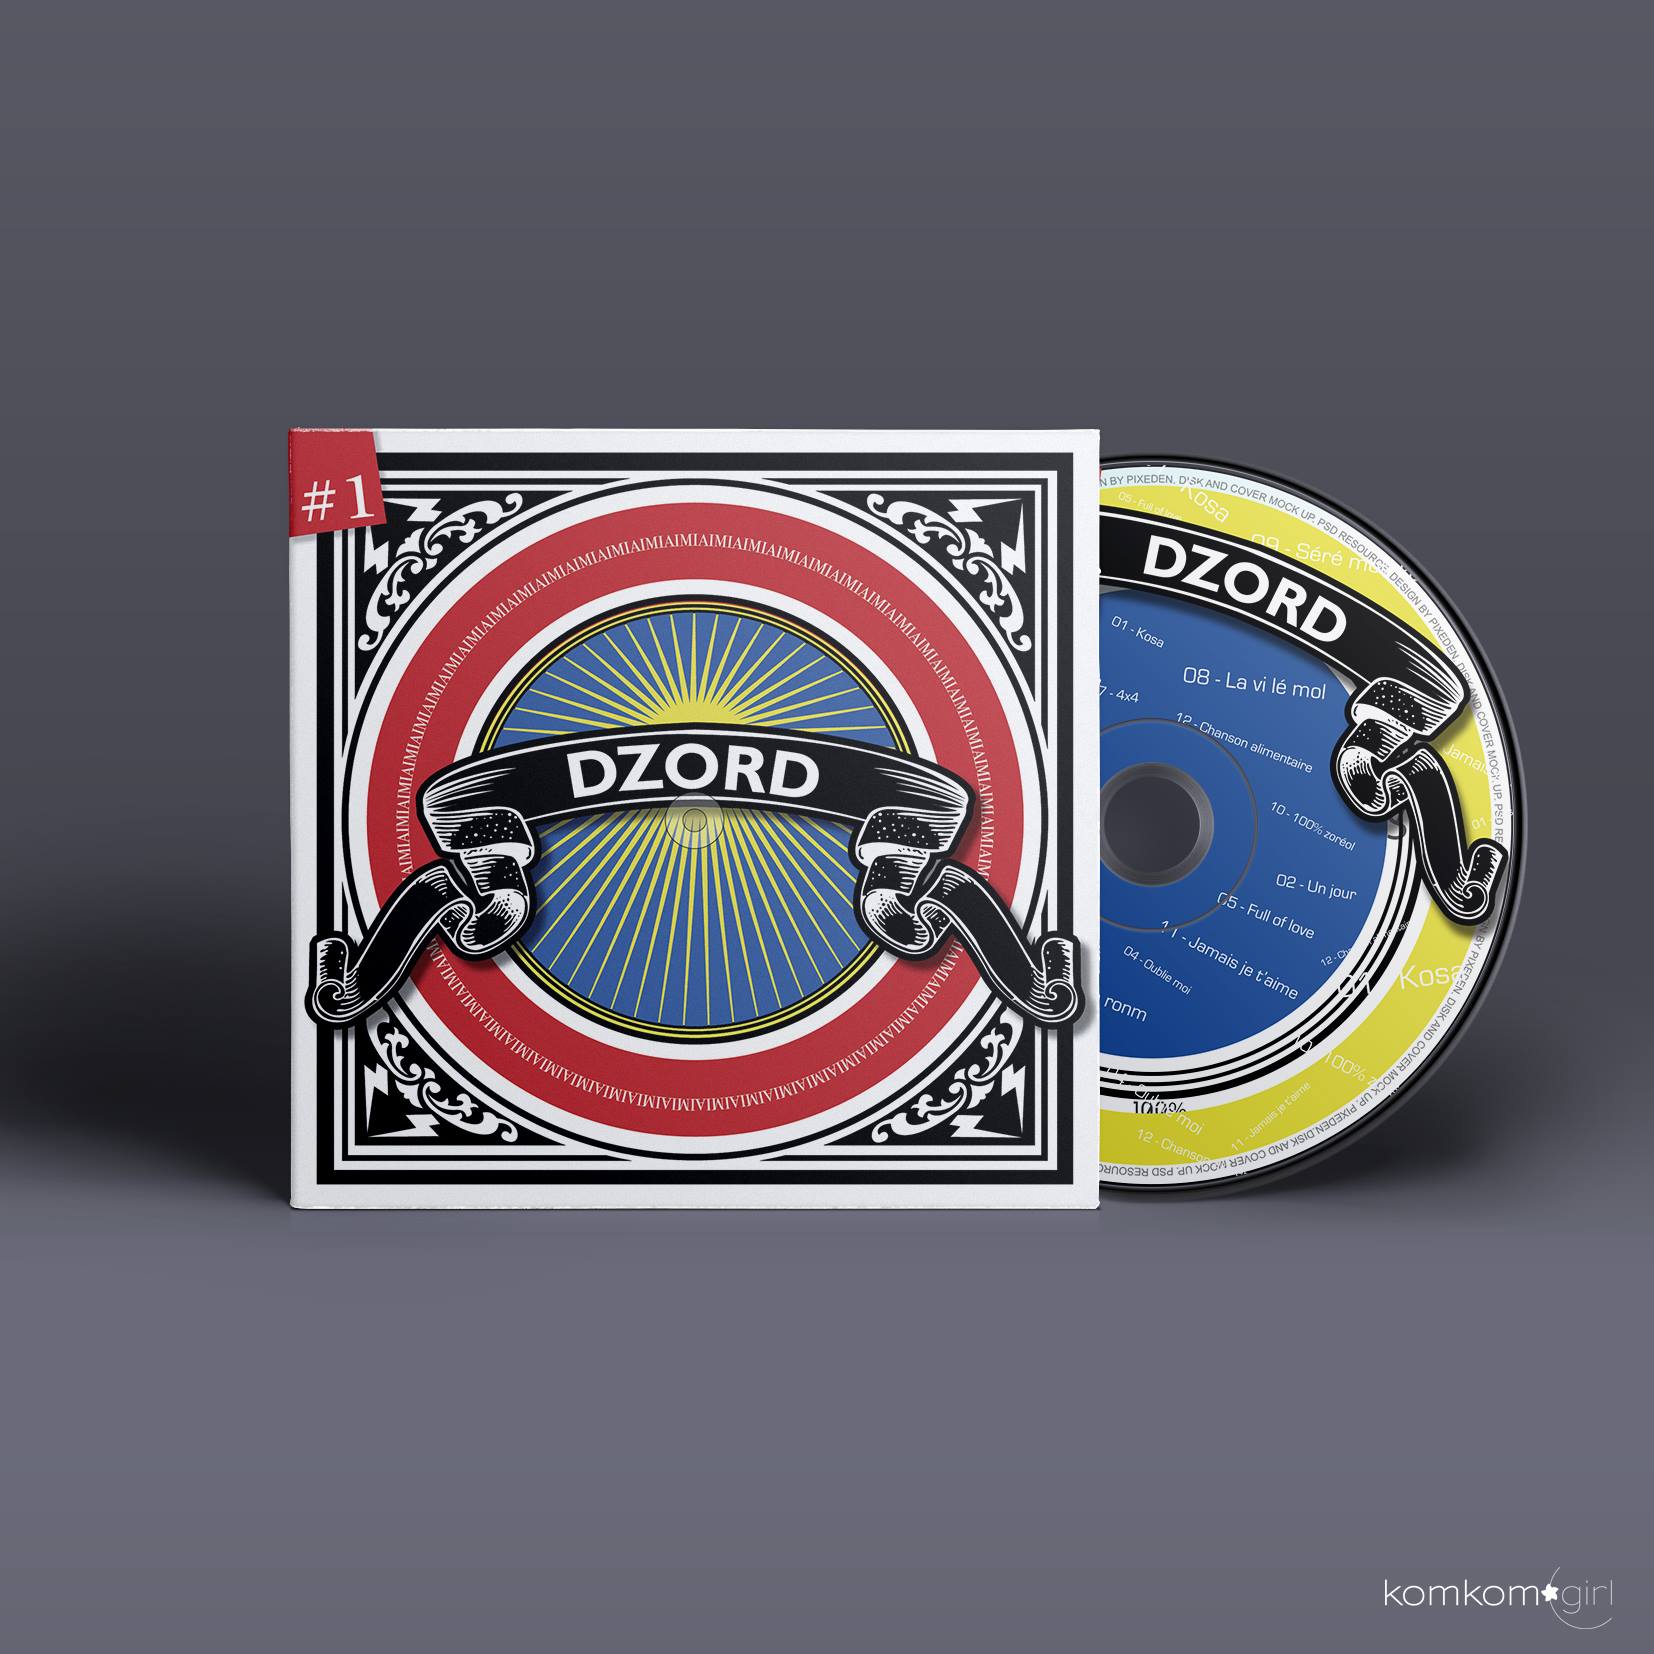 DZORD - pochette CD